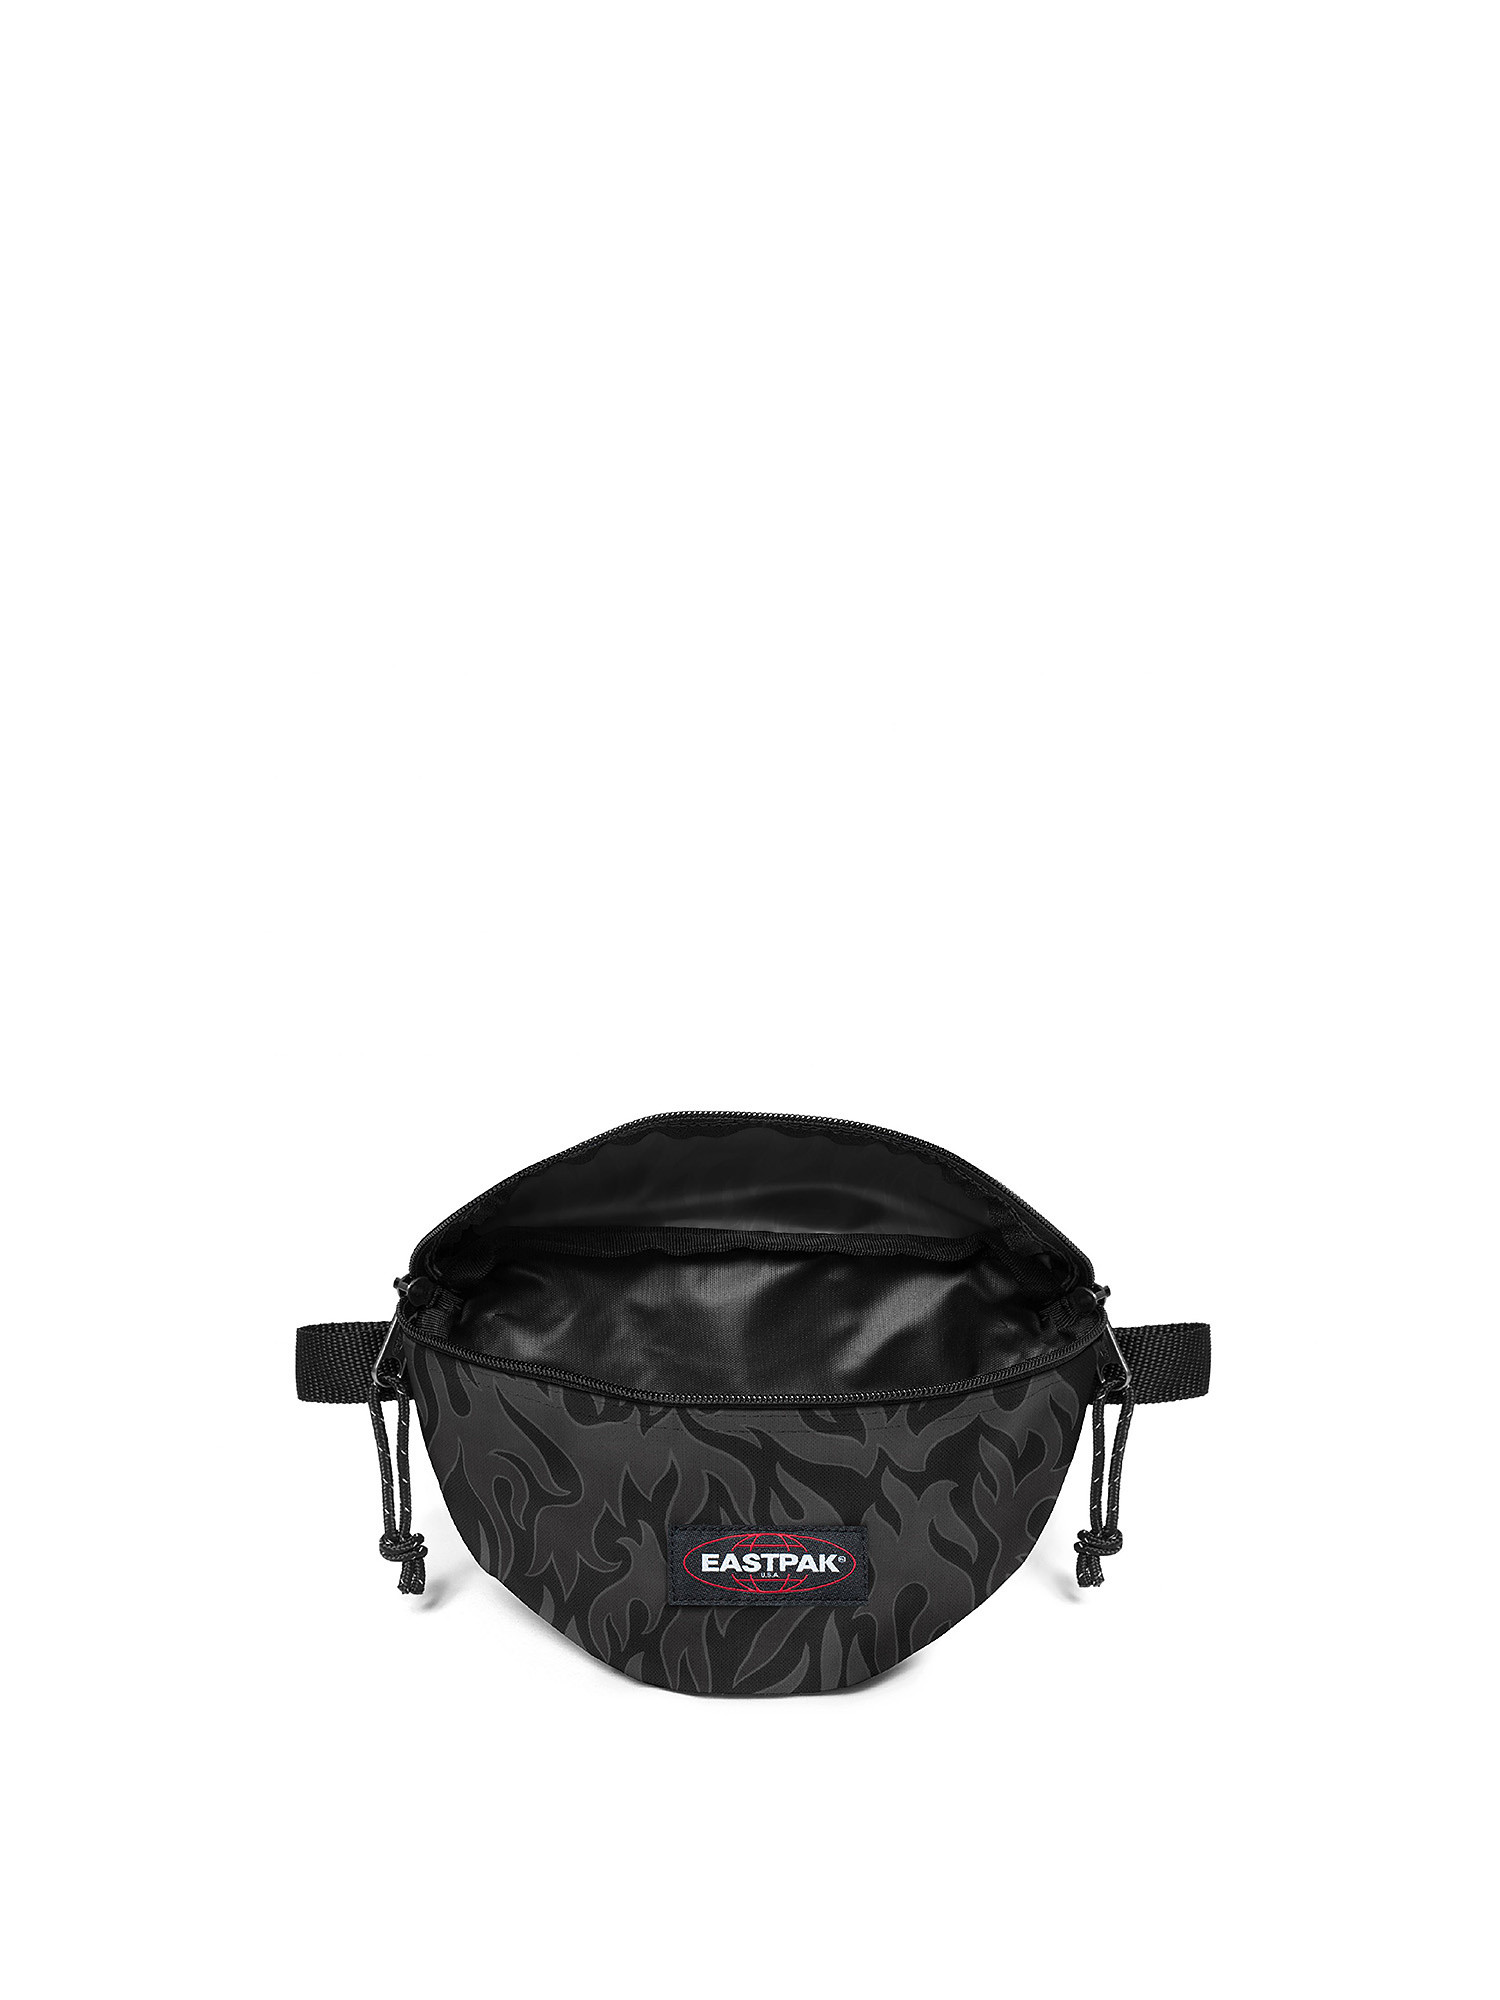 Eastpak - Springer Skate Flames Waist Bag, Black, large image number 2